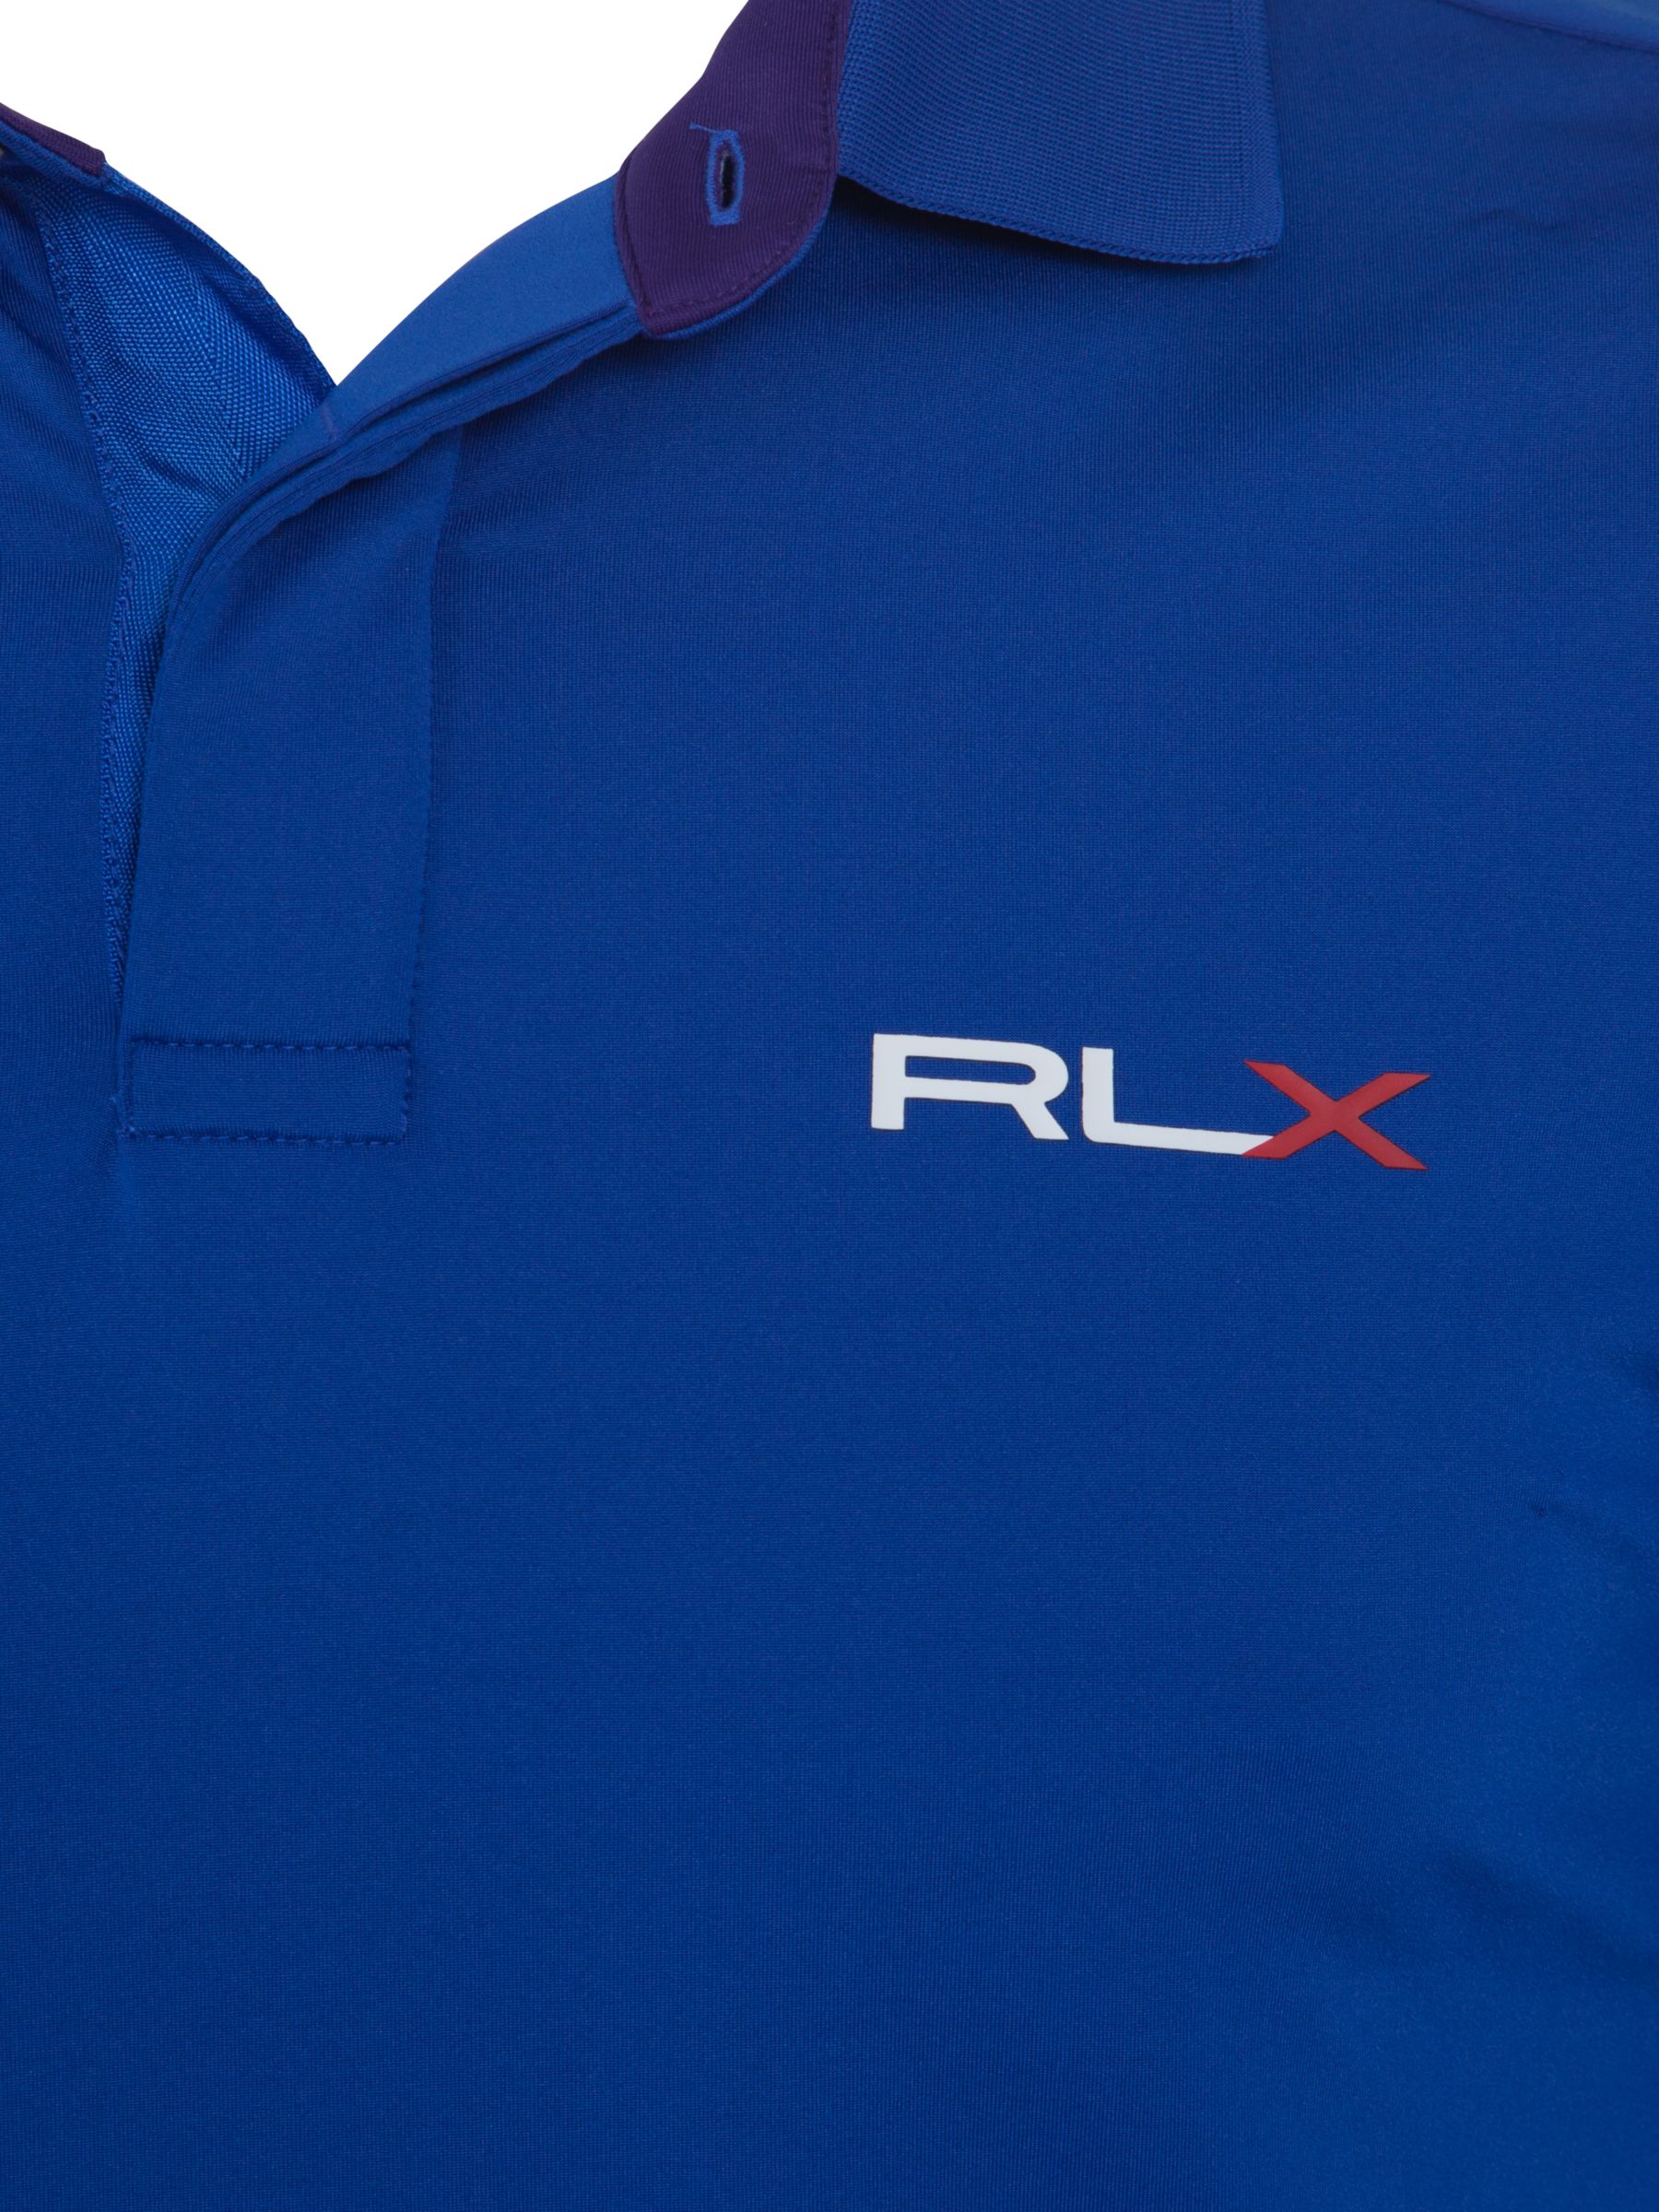 rlx polo shirt